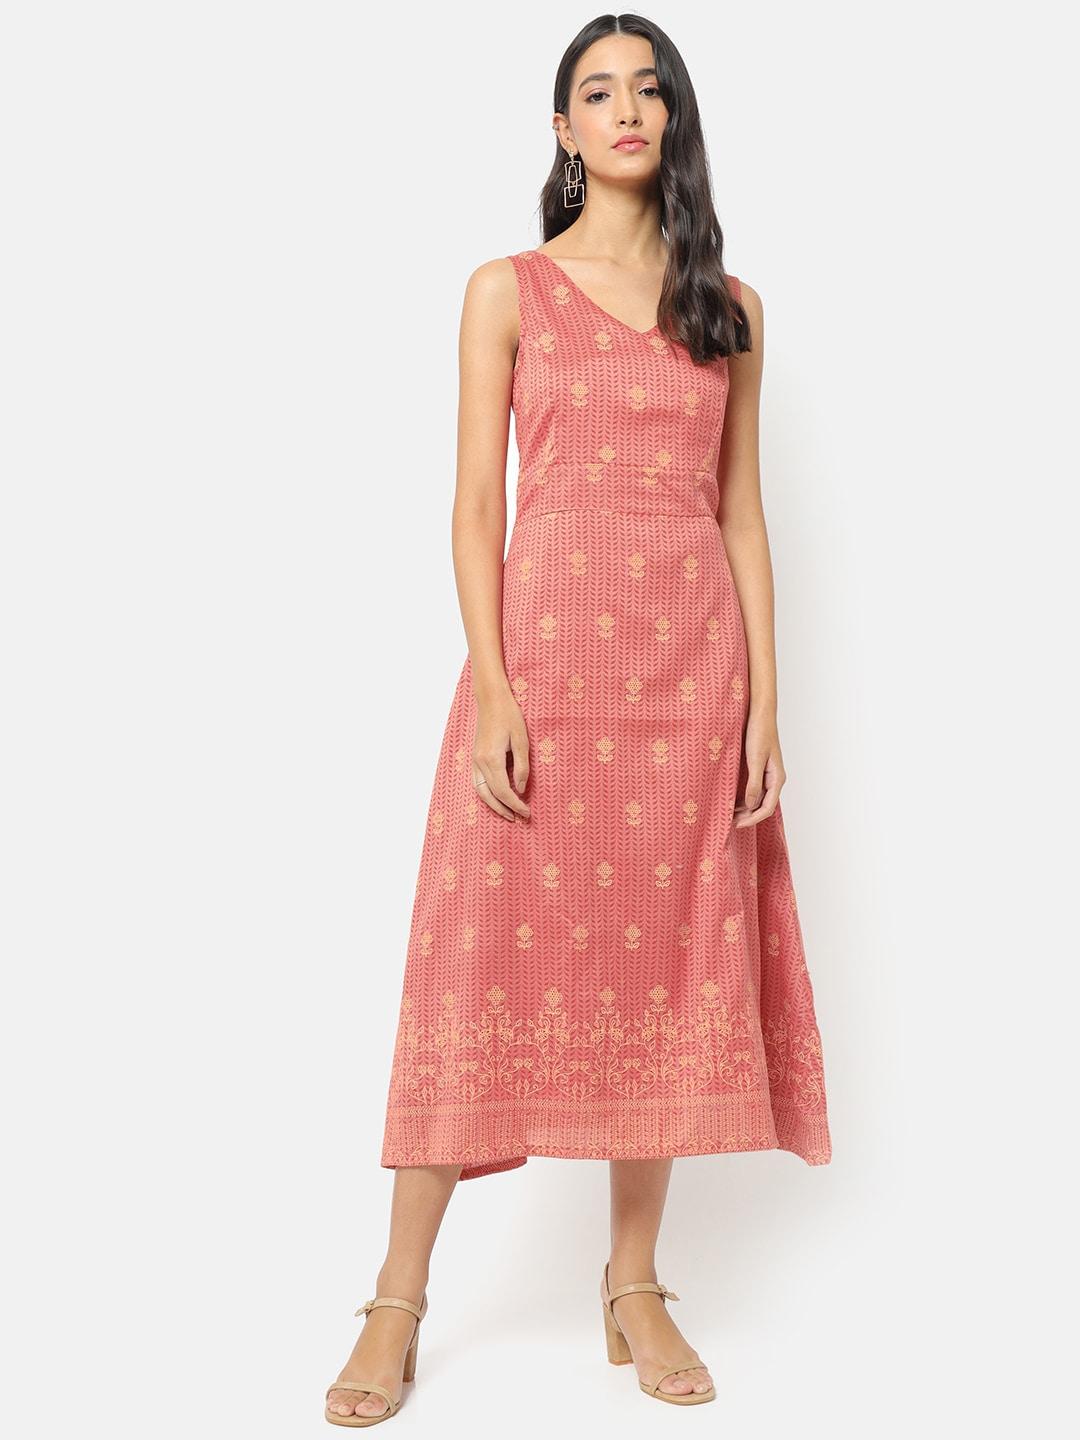 saaki rose & biege ethnic motifs printed silk a-line midi dress